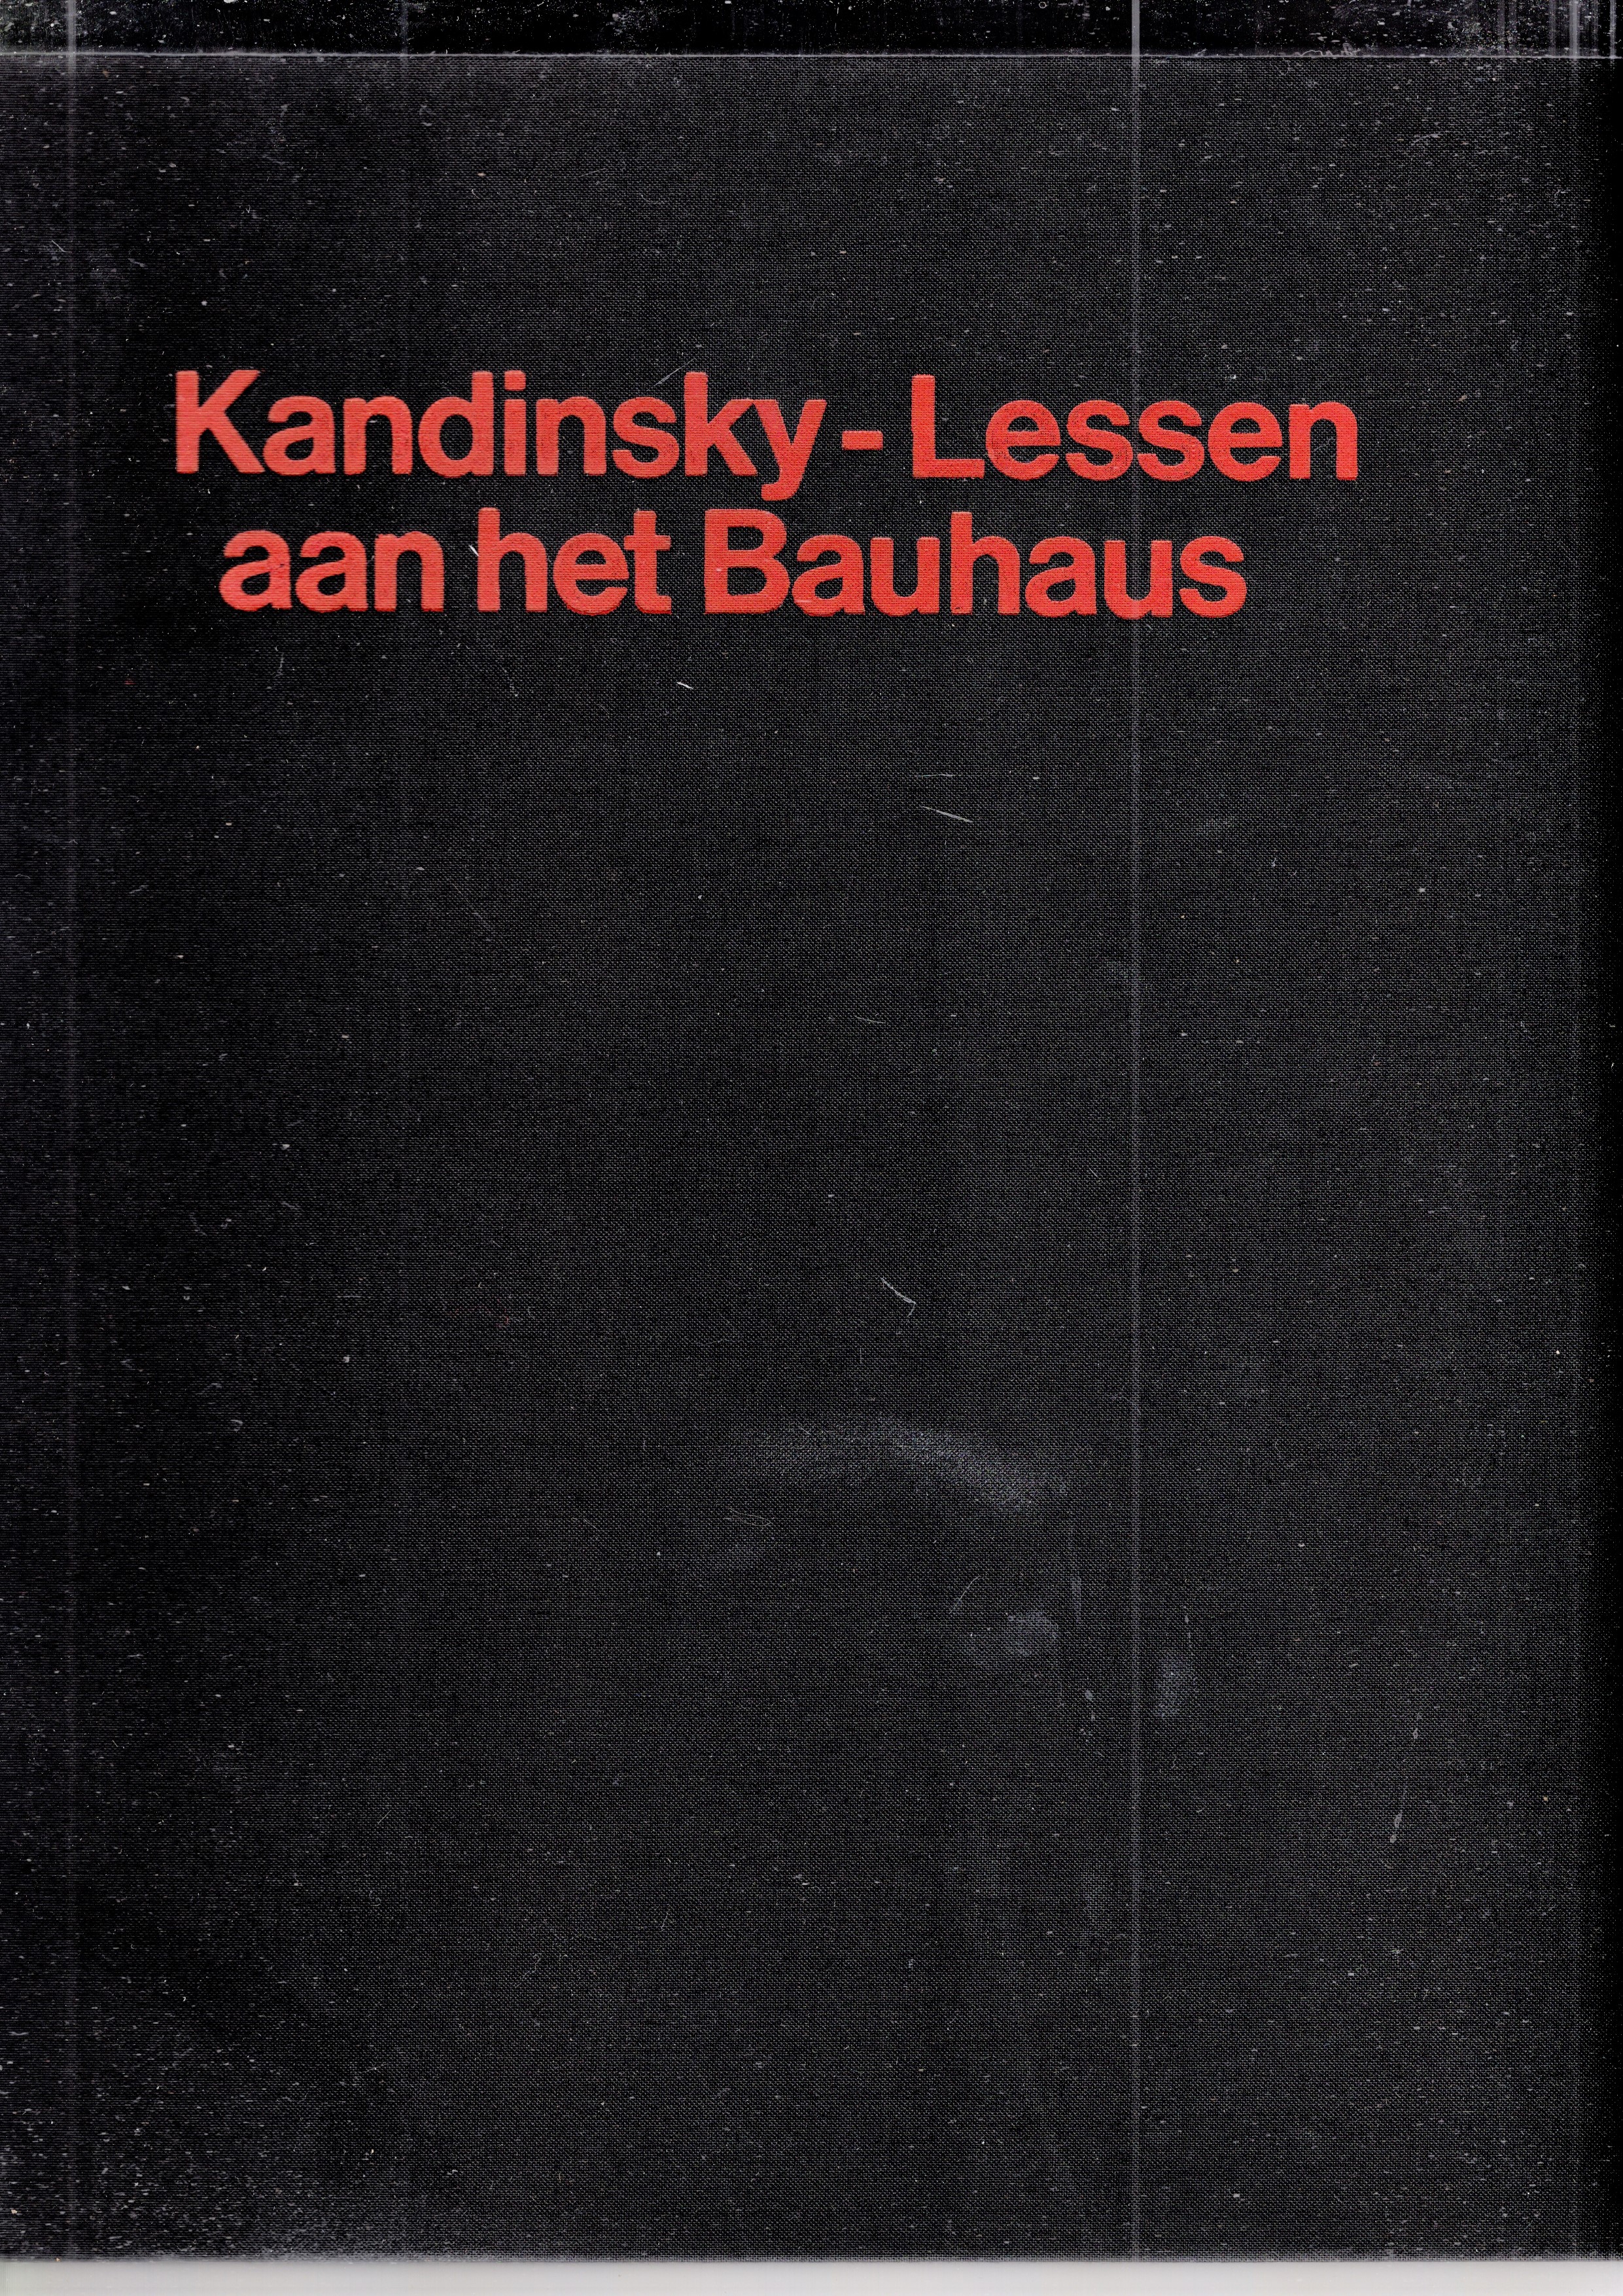 Poling, Clark V. - Lessen aan het Bauhaus, Kleurentheorie en analytisch tekenen beschreven aan de hand van voorbeelden uit de verzameling van het Bauhaus-Archiv, Berlijn 